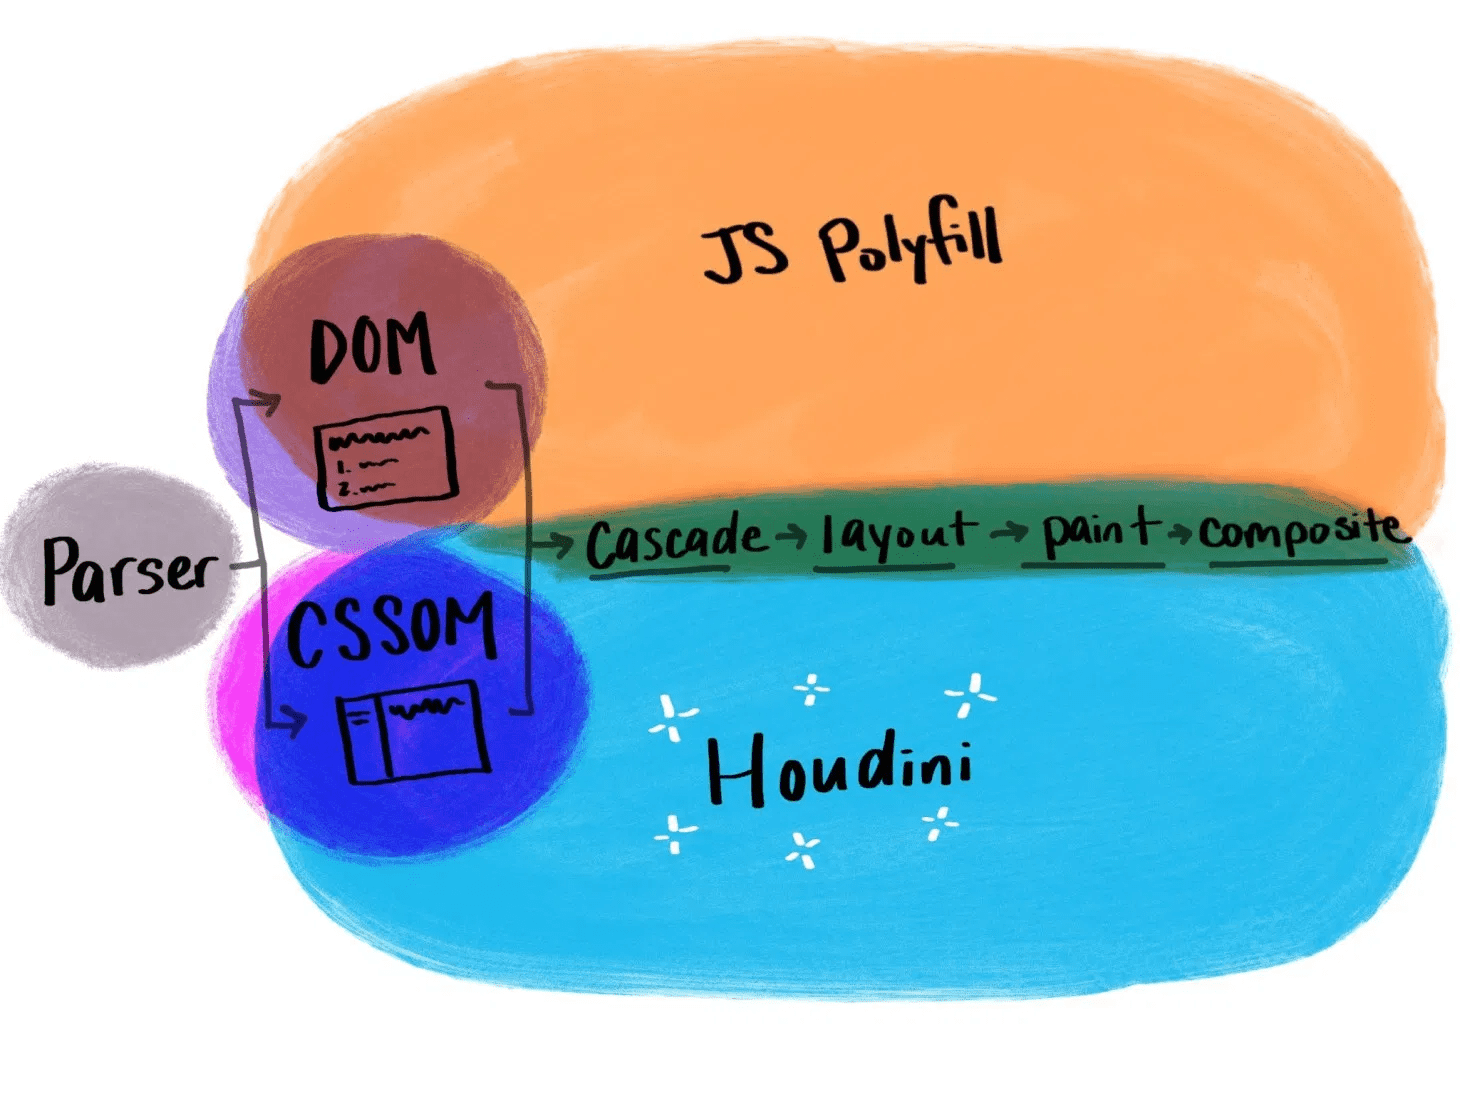 Grafika obrazująca działanie aplikacji Houdini w porównaniu z tradycyjnymi kodami polyfill JavaScript.